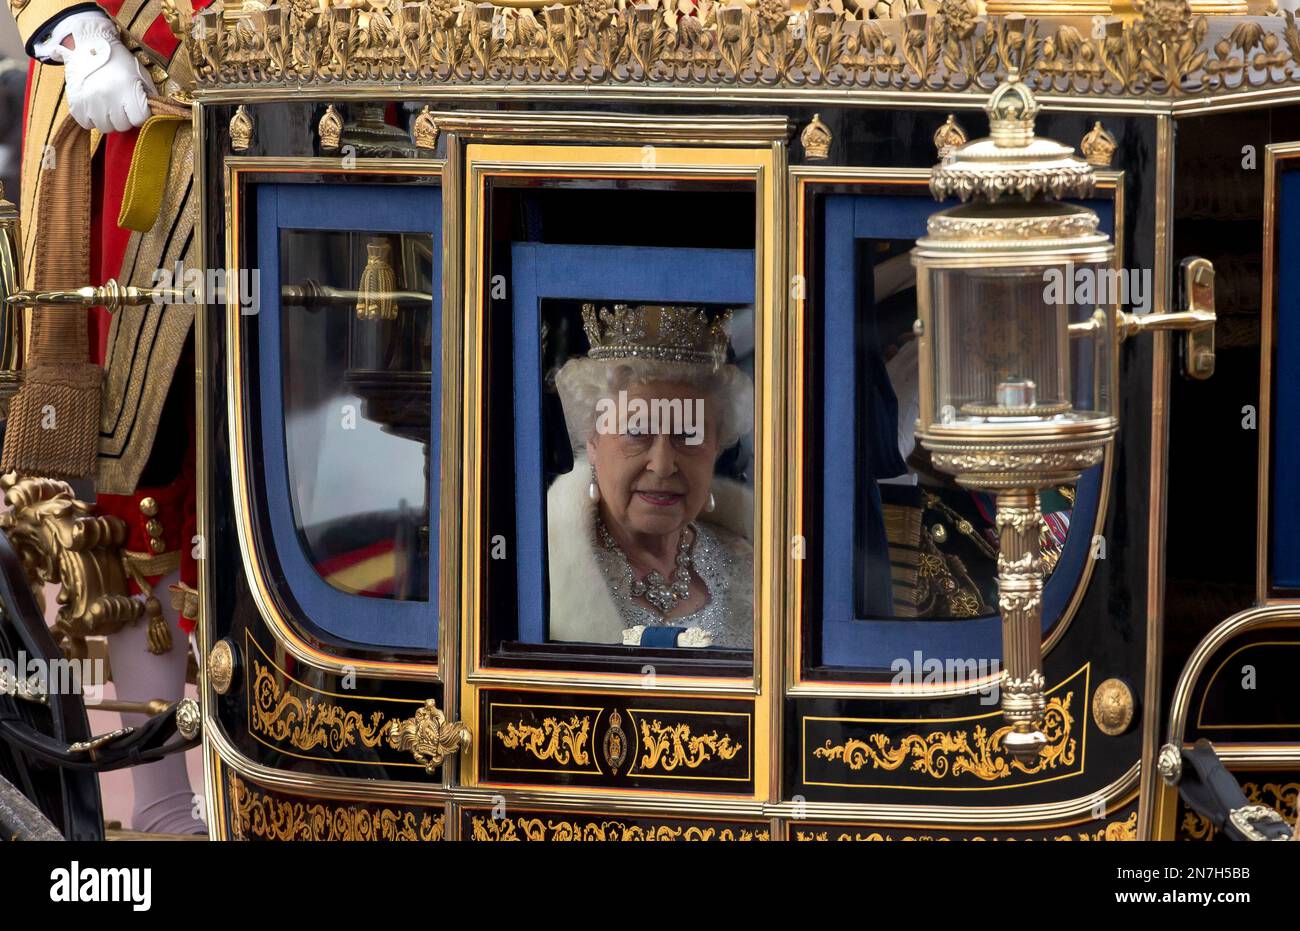 La reina Isabel II, de la Gran Bretaña, sale del Palacio de Buckingham y se dirige en carroza al Parlamento para pronunciar su discurso por la apertura de las sesiones legislativas en Londres, el miércoles 8 de mayo de 2013. (AP Foto/Matt Dunham) Stockfoto